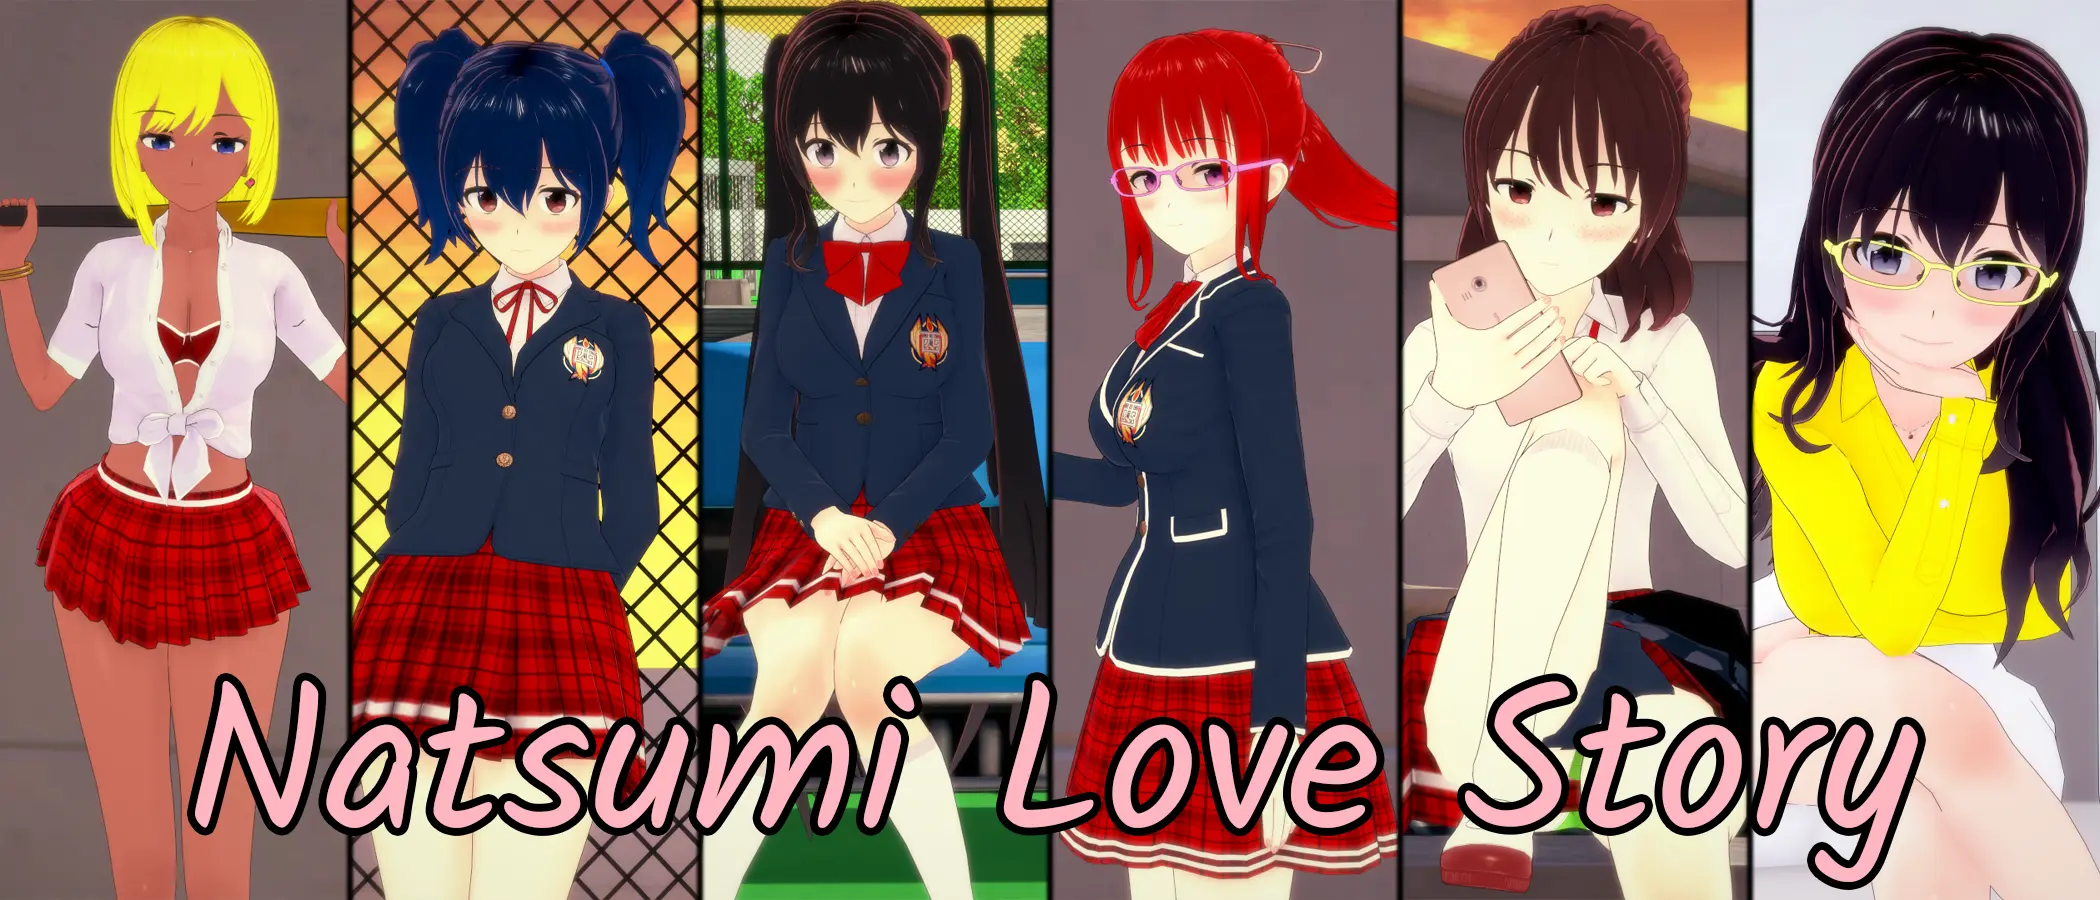 Natsumi Love Story [v0.1] main image